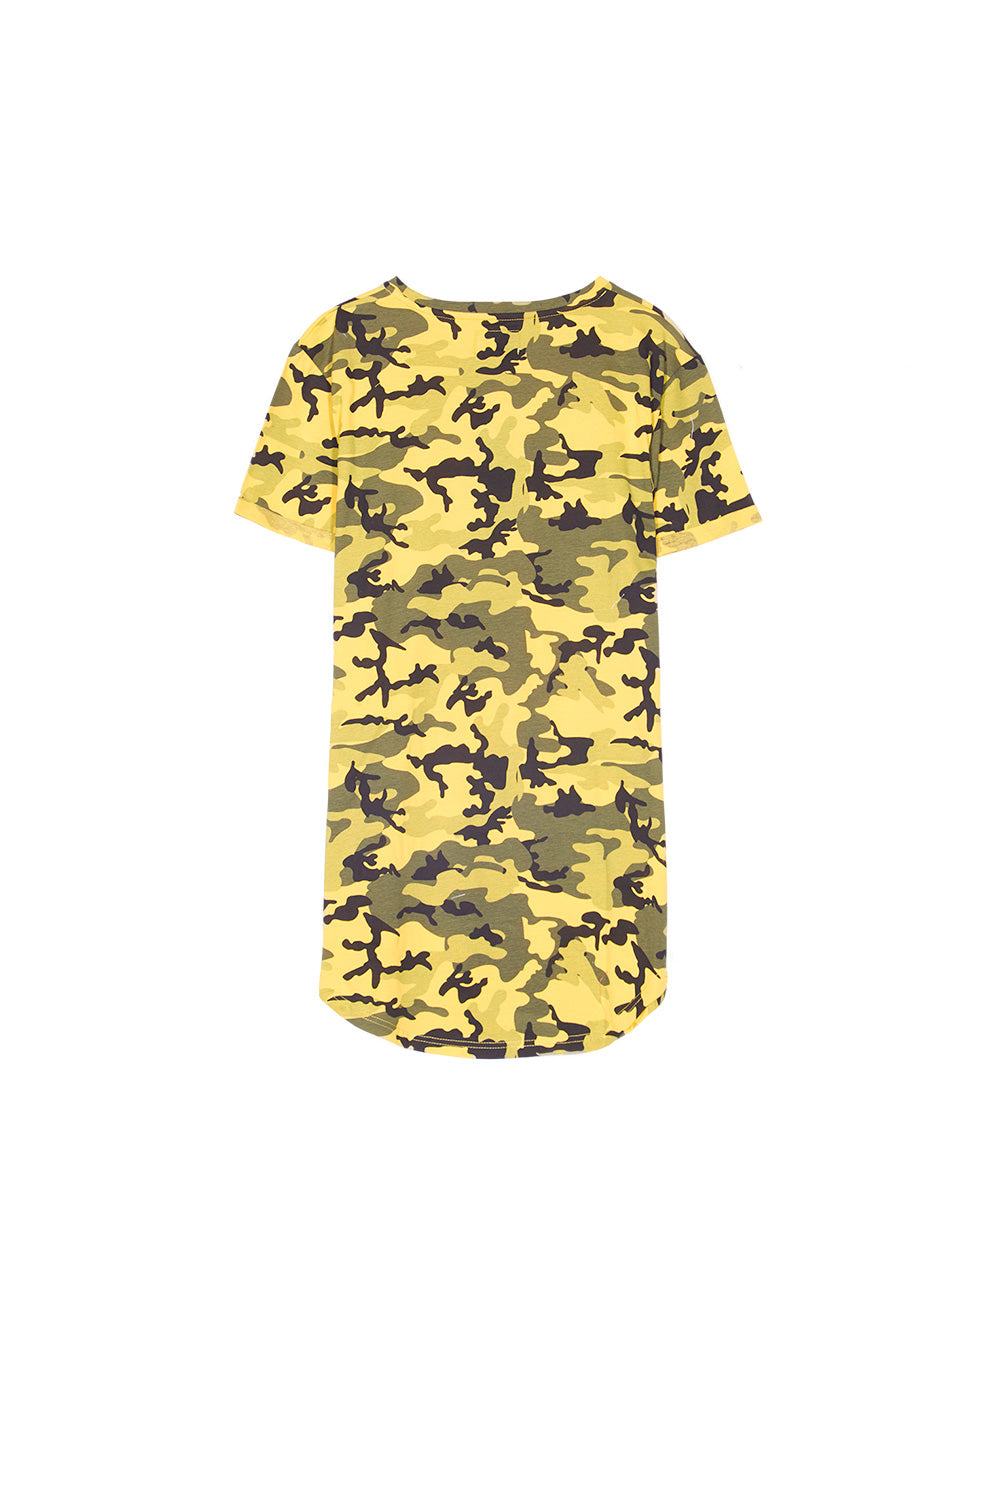 Sixth June - T-shirt camouflage jaune